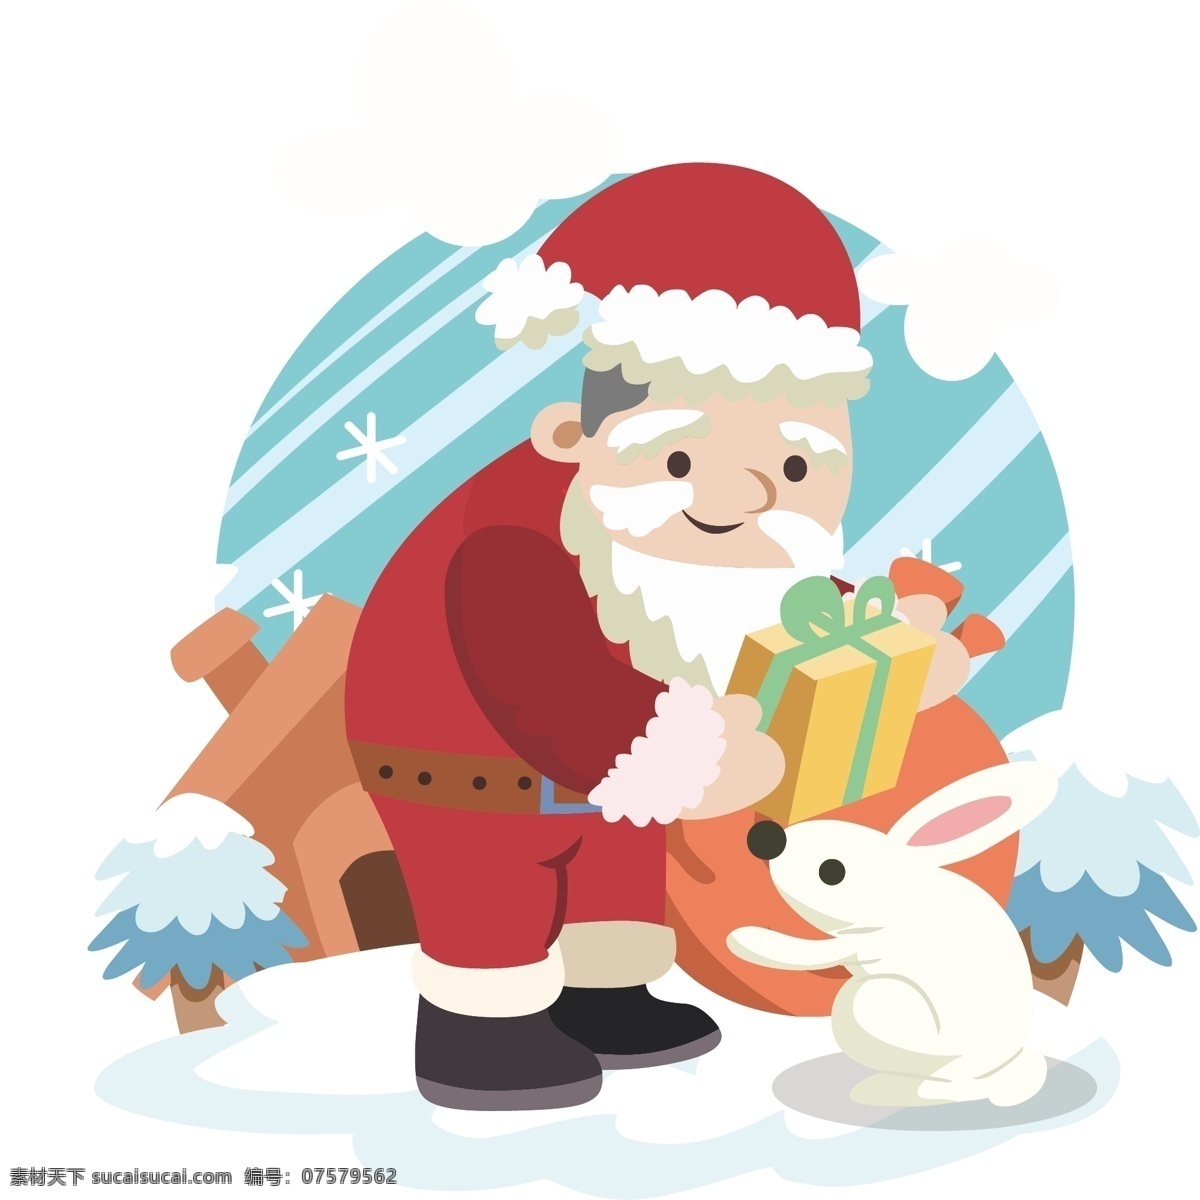 圣诞老人 小 白兔 送礼 物 卡通圣诞老人 小白兔 圣诞快乐 圣诞节 圣诞礼物 礼品盒 黄色礼品盒 红色圣诞帽